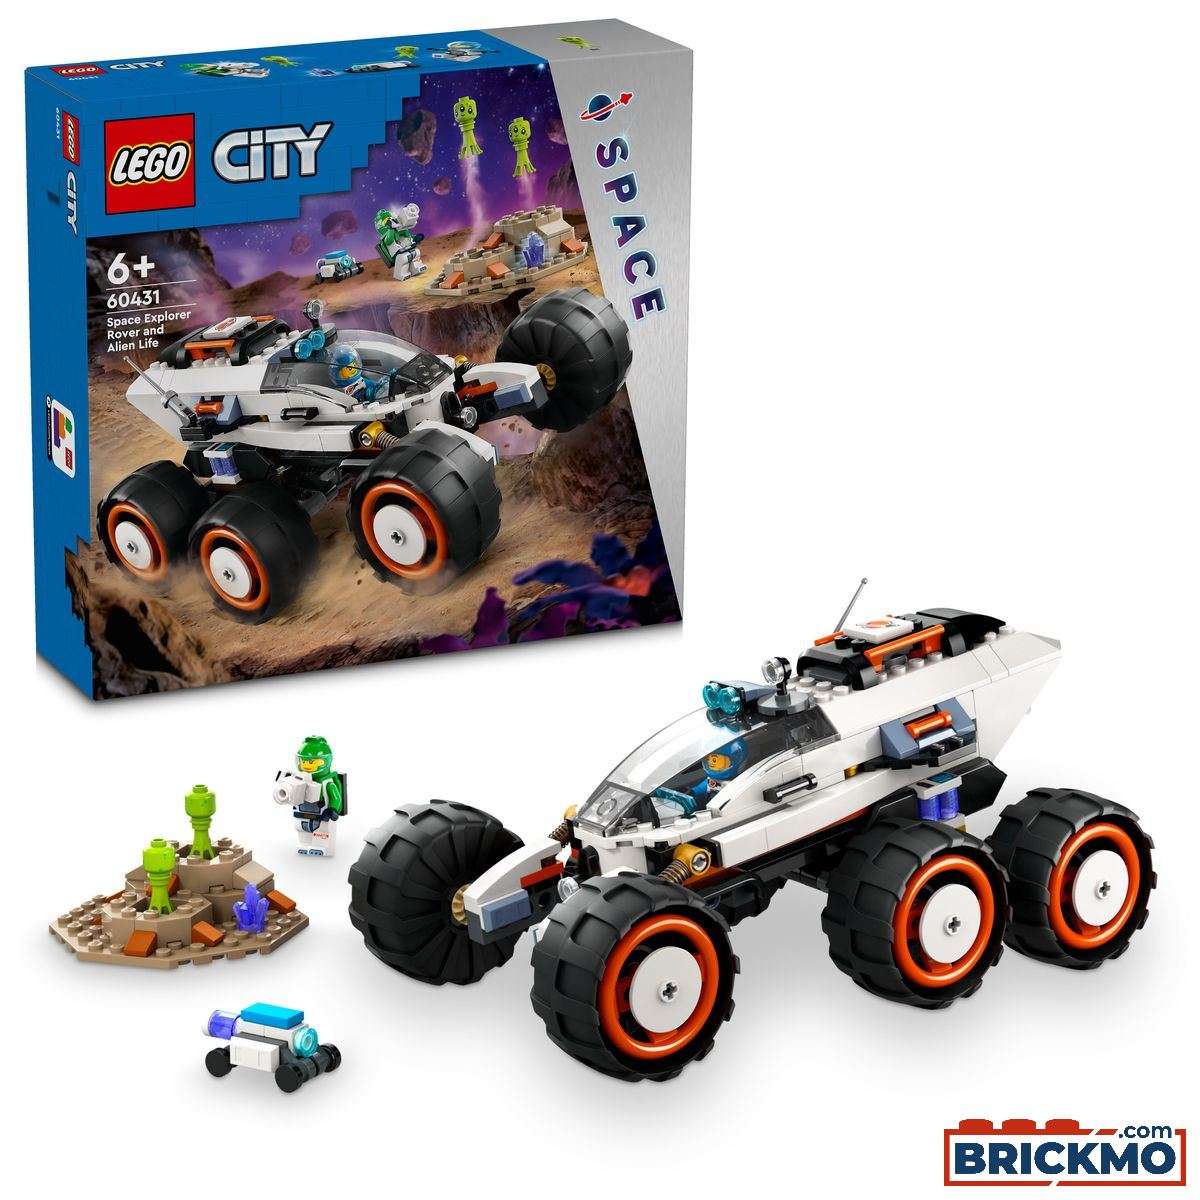 LEGO City 60431 Rover esploratore spaziale e vita aliena 60431